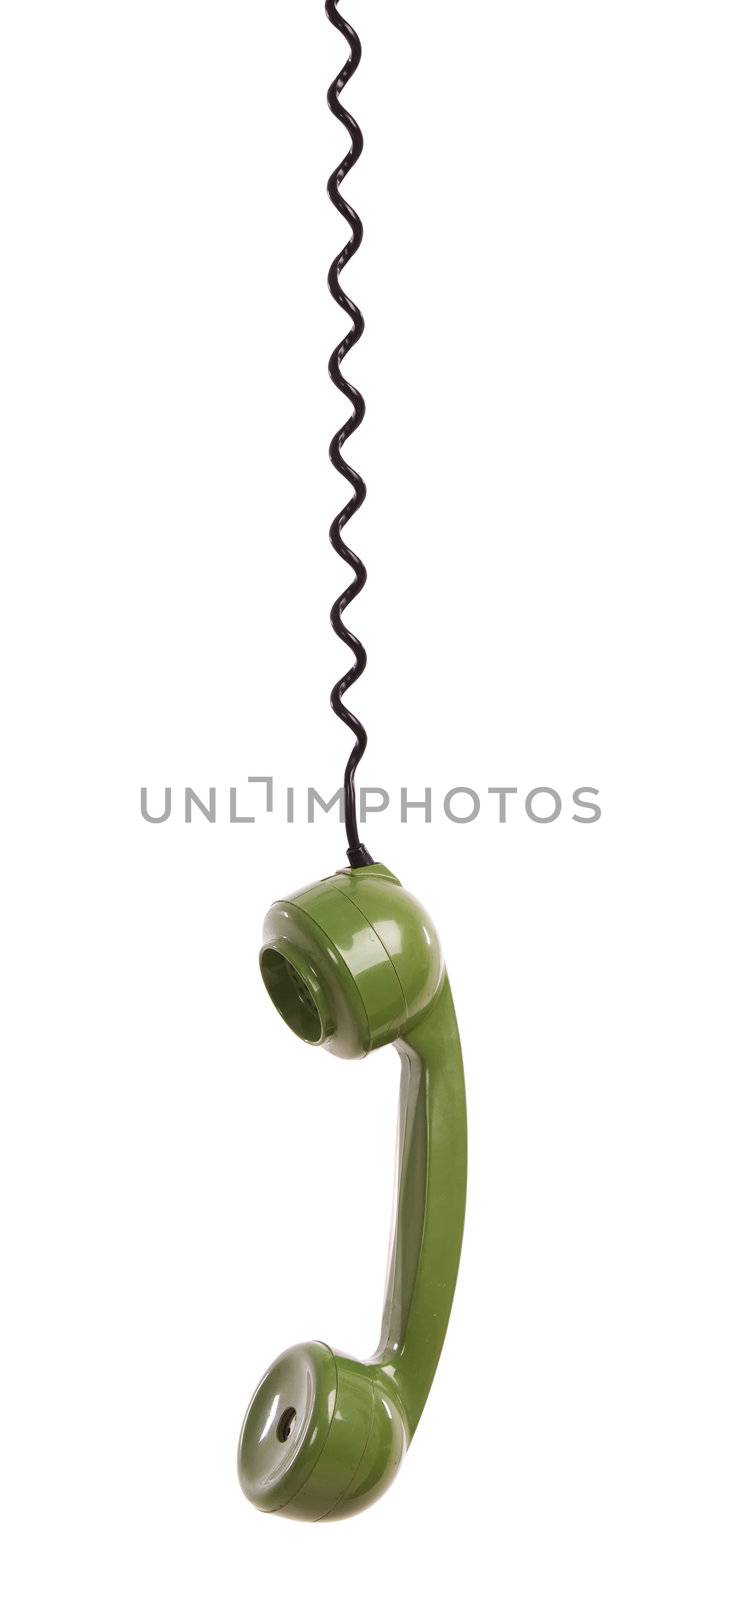 Vintage telephone by Iko